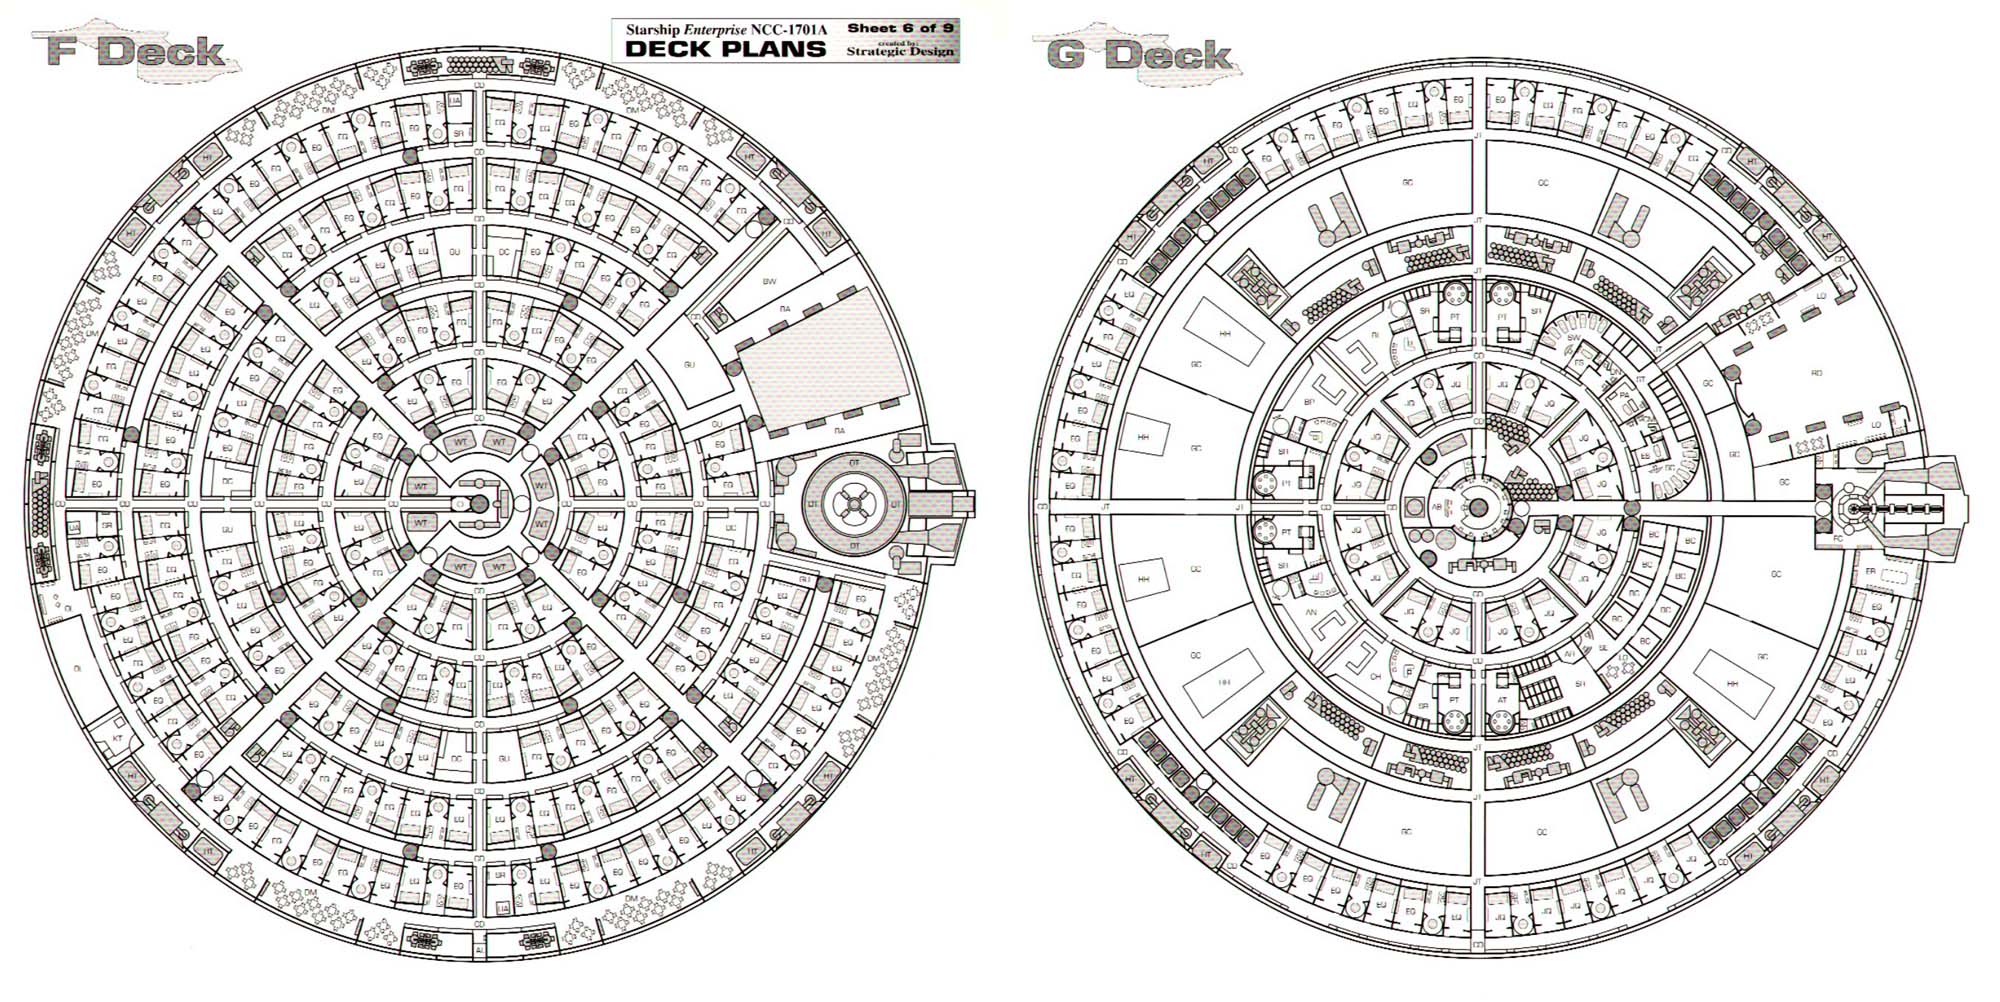 u-s-s-enterprise-ncc-1701a-deck-plans